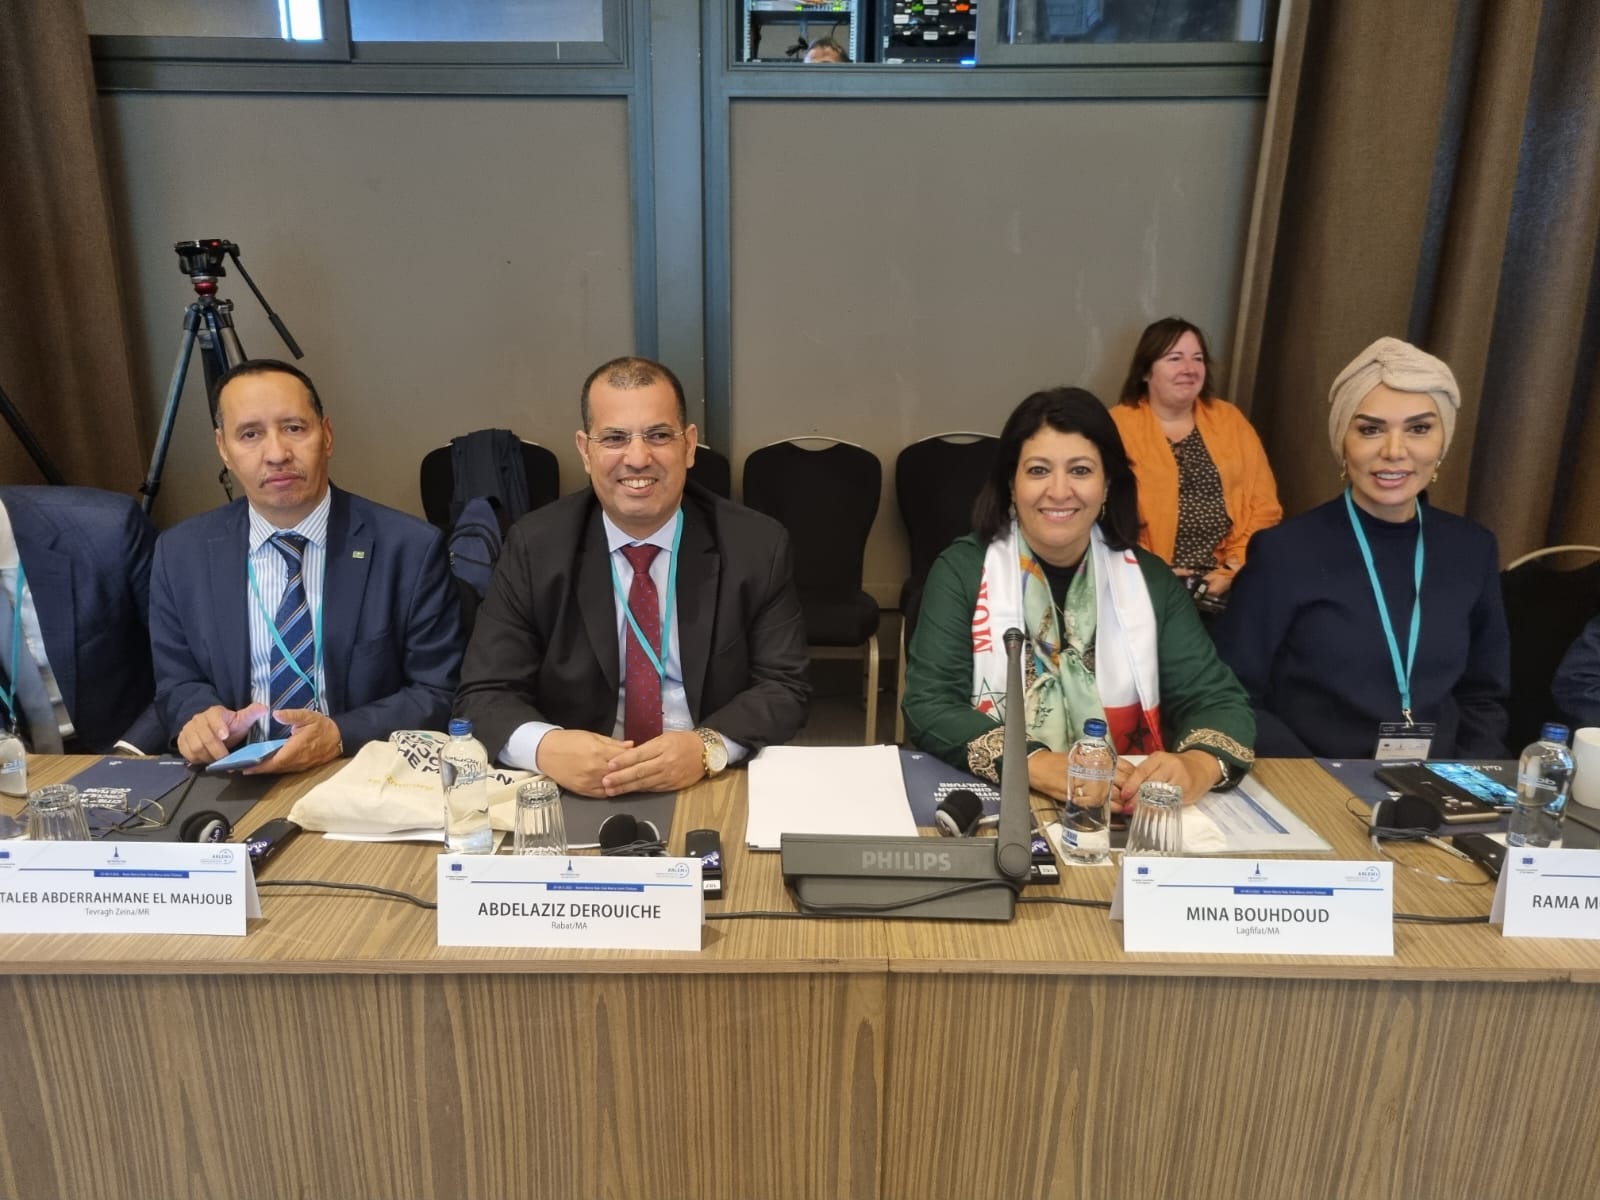 مشاركة الجمعية المغربية لرؤساء مجالس العمالات والأقاليم في أعمال الجلسة العامة الثالثة عشرة للجمعية الإقليمية والمحلية الأورومتوسطية(ARLEM)،